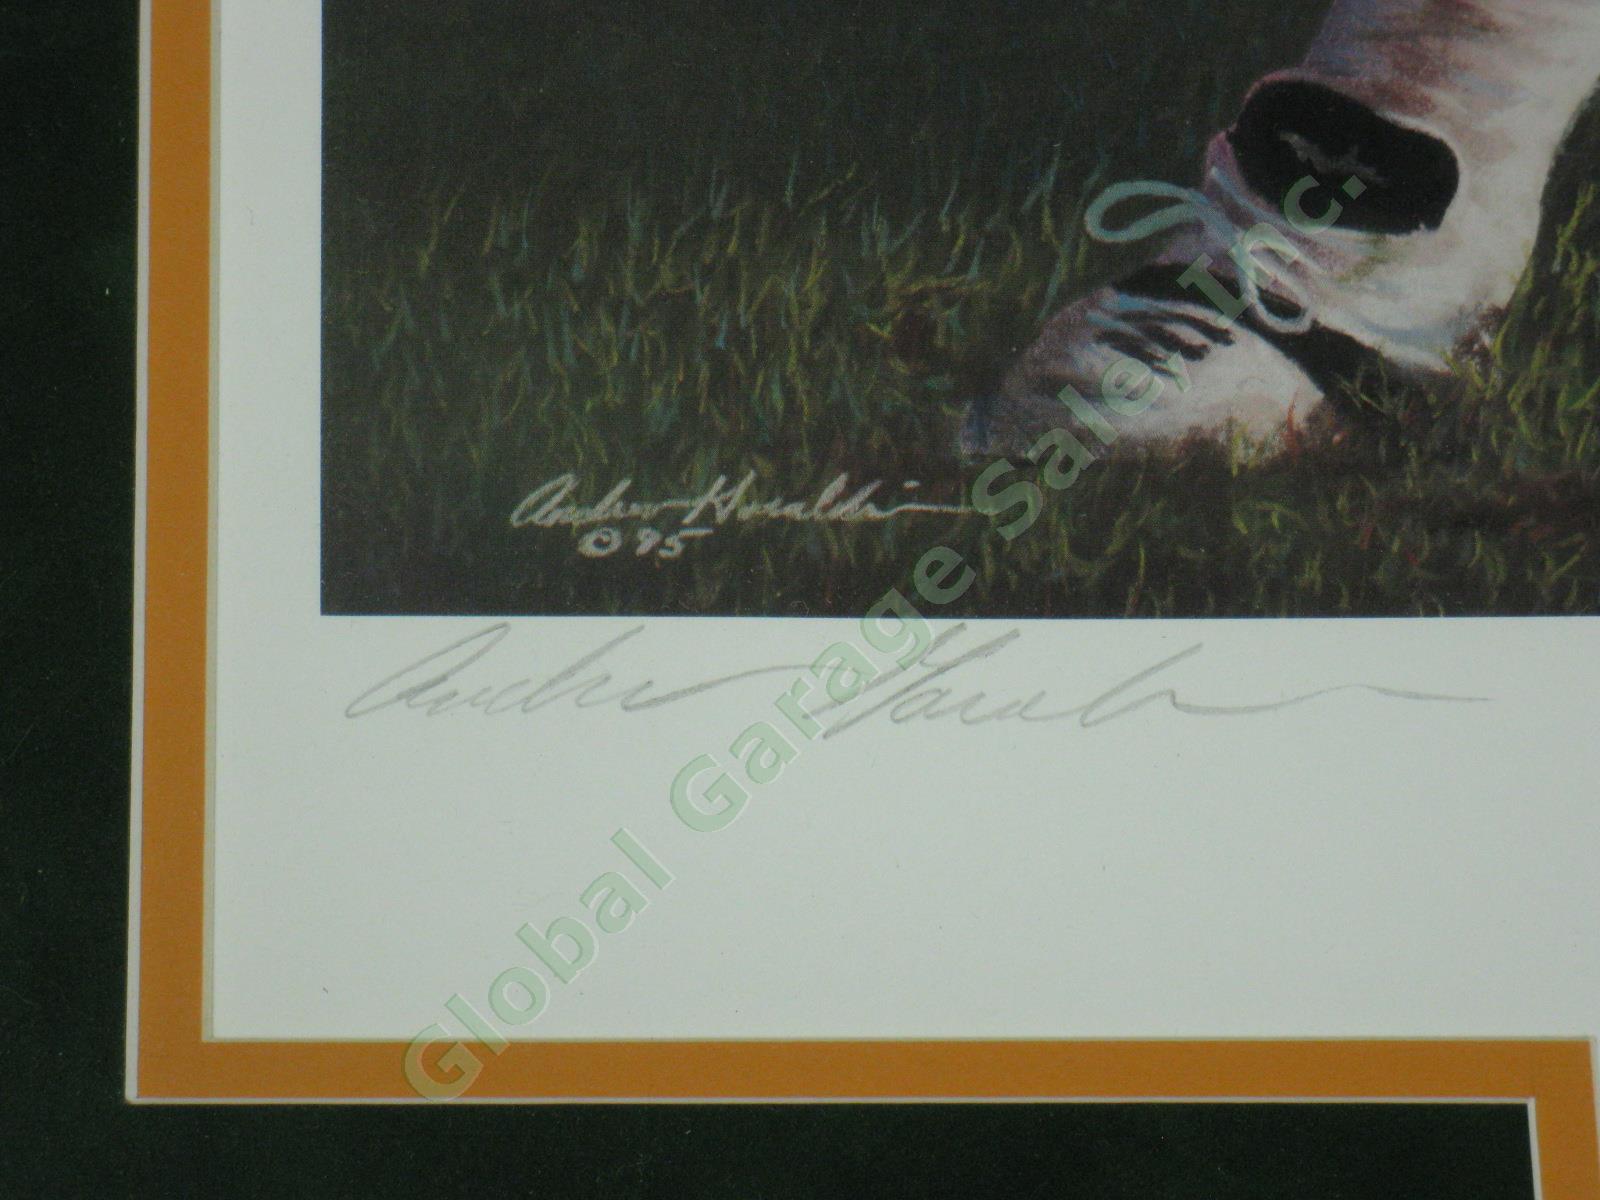 Brett Favre Signed Green Bay Packers Art Print Andrew Goralski Heart of Gold NR! 4